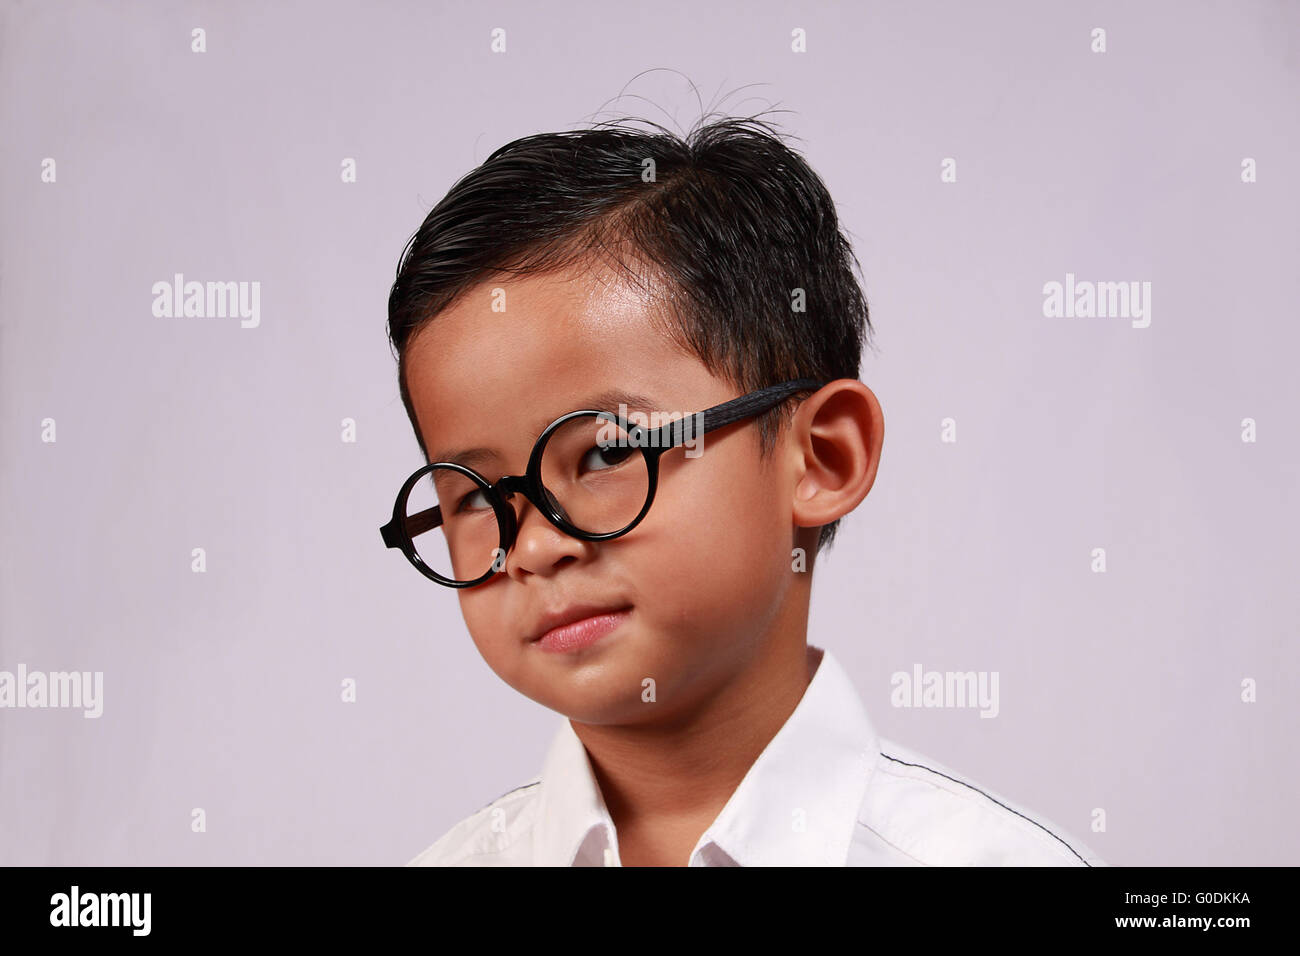 Ritratto di smart giovane ragazzo asiatico con gli occhiali che mostra il suo sorriso adorabile Foto Stock